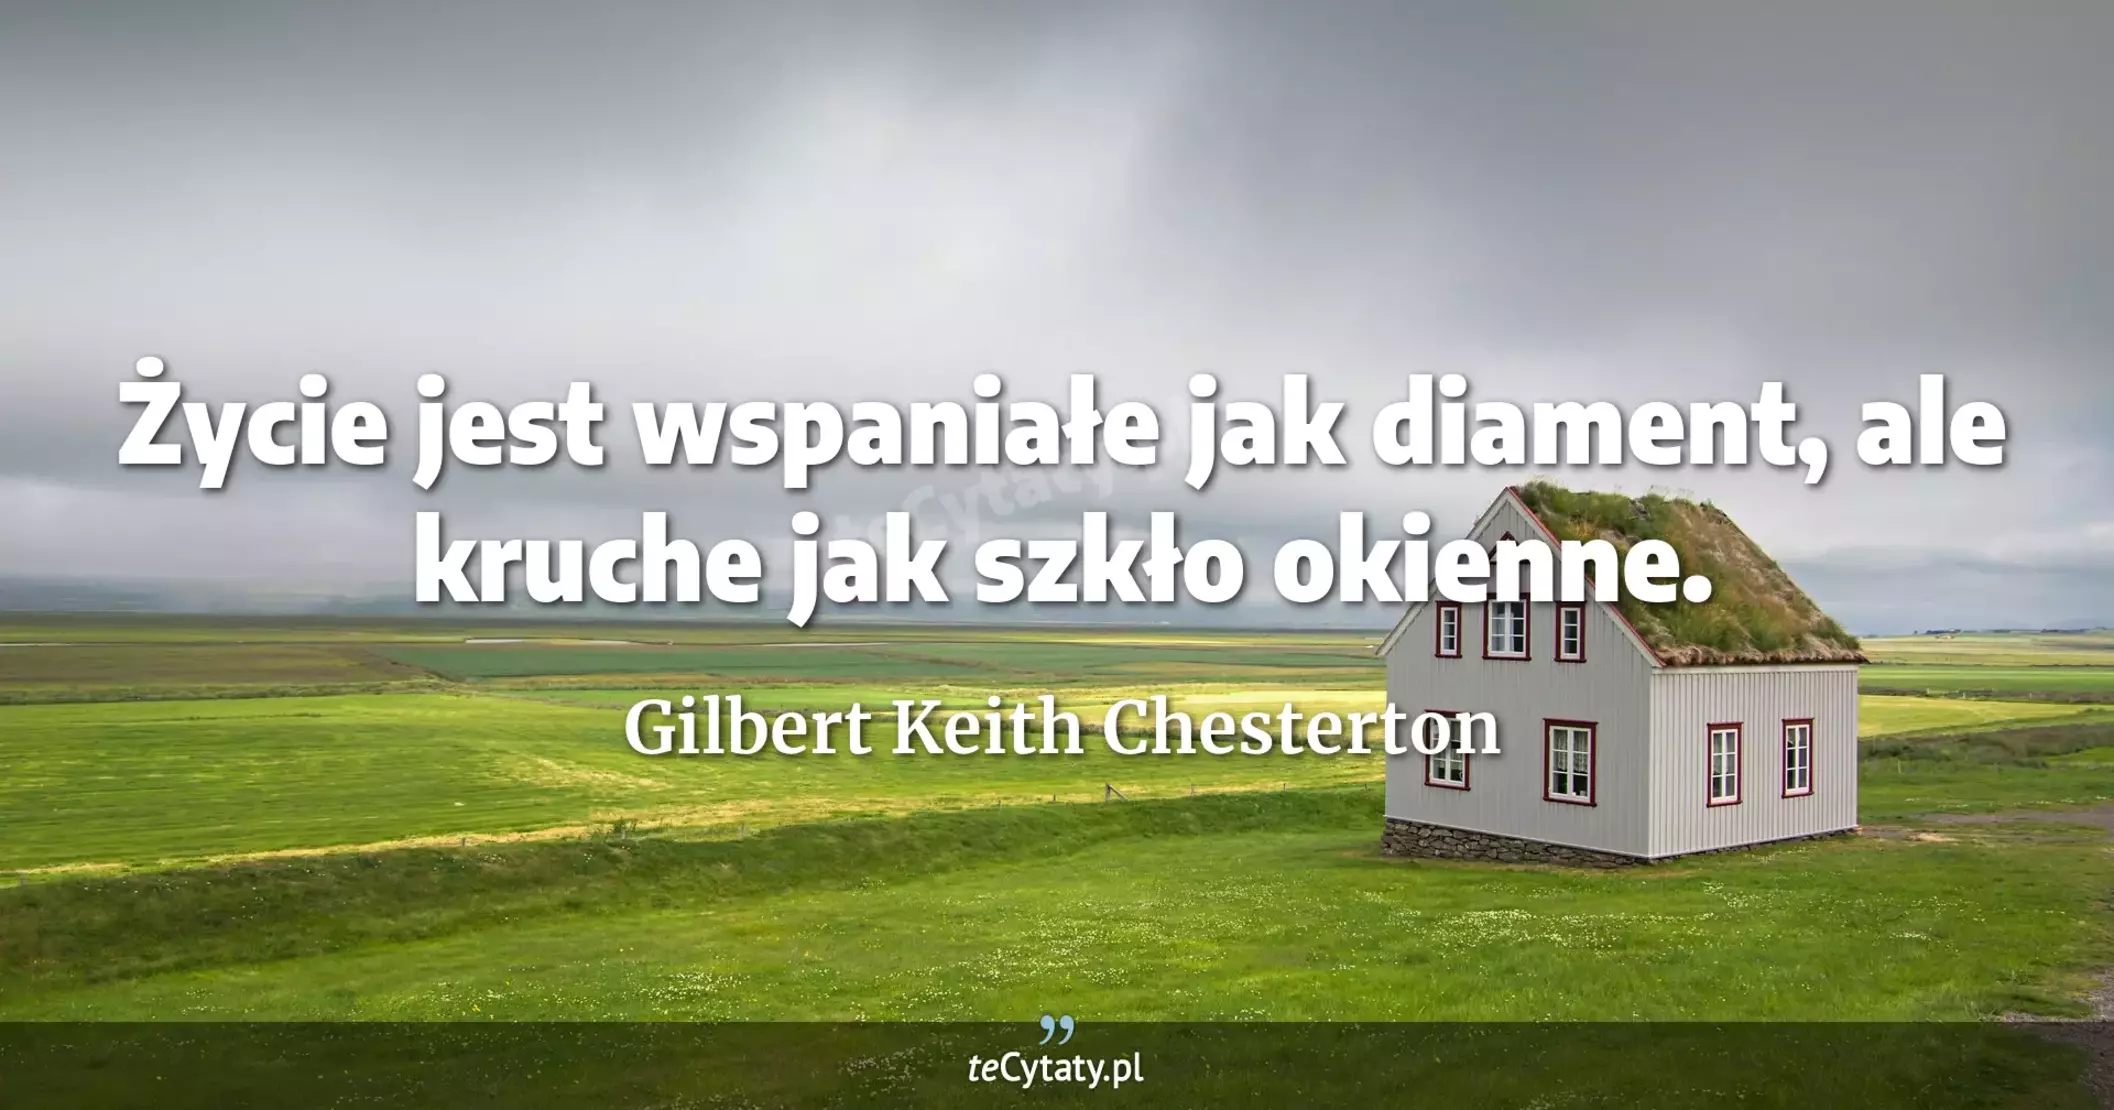 Życie jest wspaniałe jak diament, ale kruche jak szkło okienne. - Gilbert Keith Chesterton